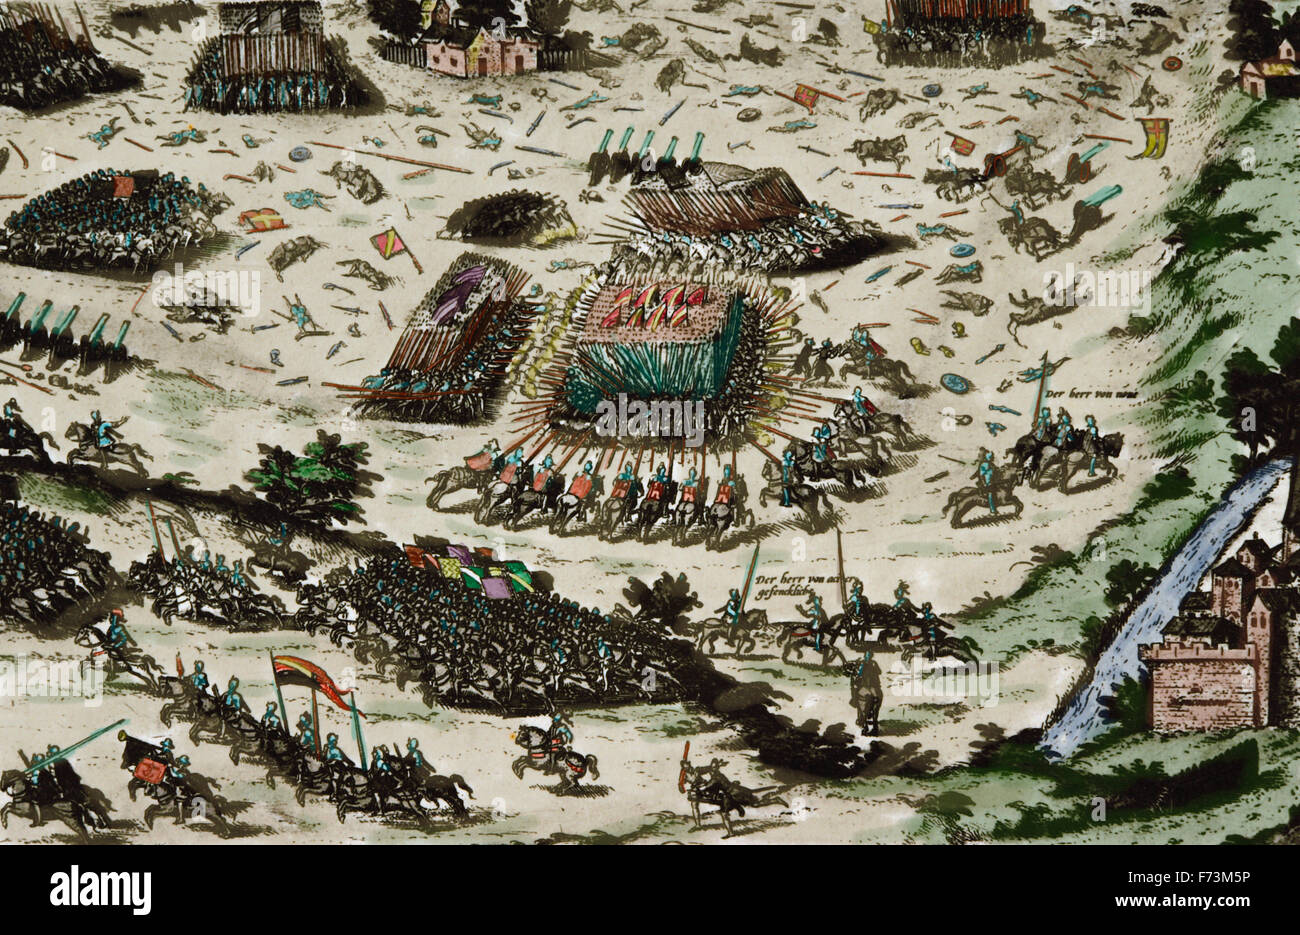 Schlacht von Moncontour, Naturgewalten 3 Oktober 1569 zwischen der katholischen König Charles IX von Frankreich und die Hugenotten während des Dritten Krieges (1568-1570) der französischen Kriege der Religion. Gravur. Farbige. Stockfoto